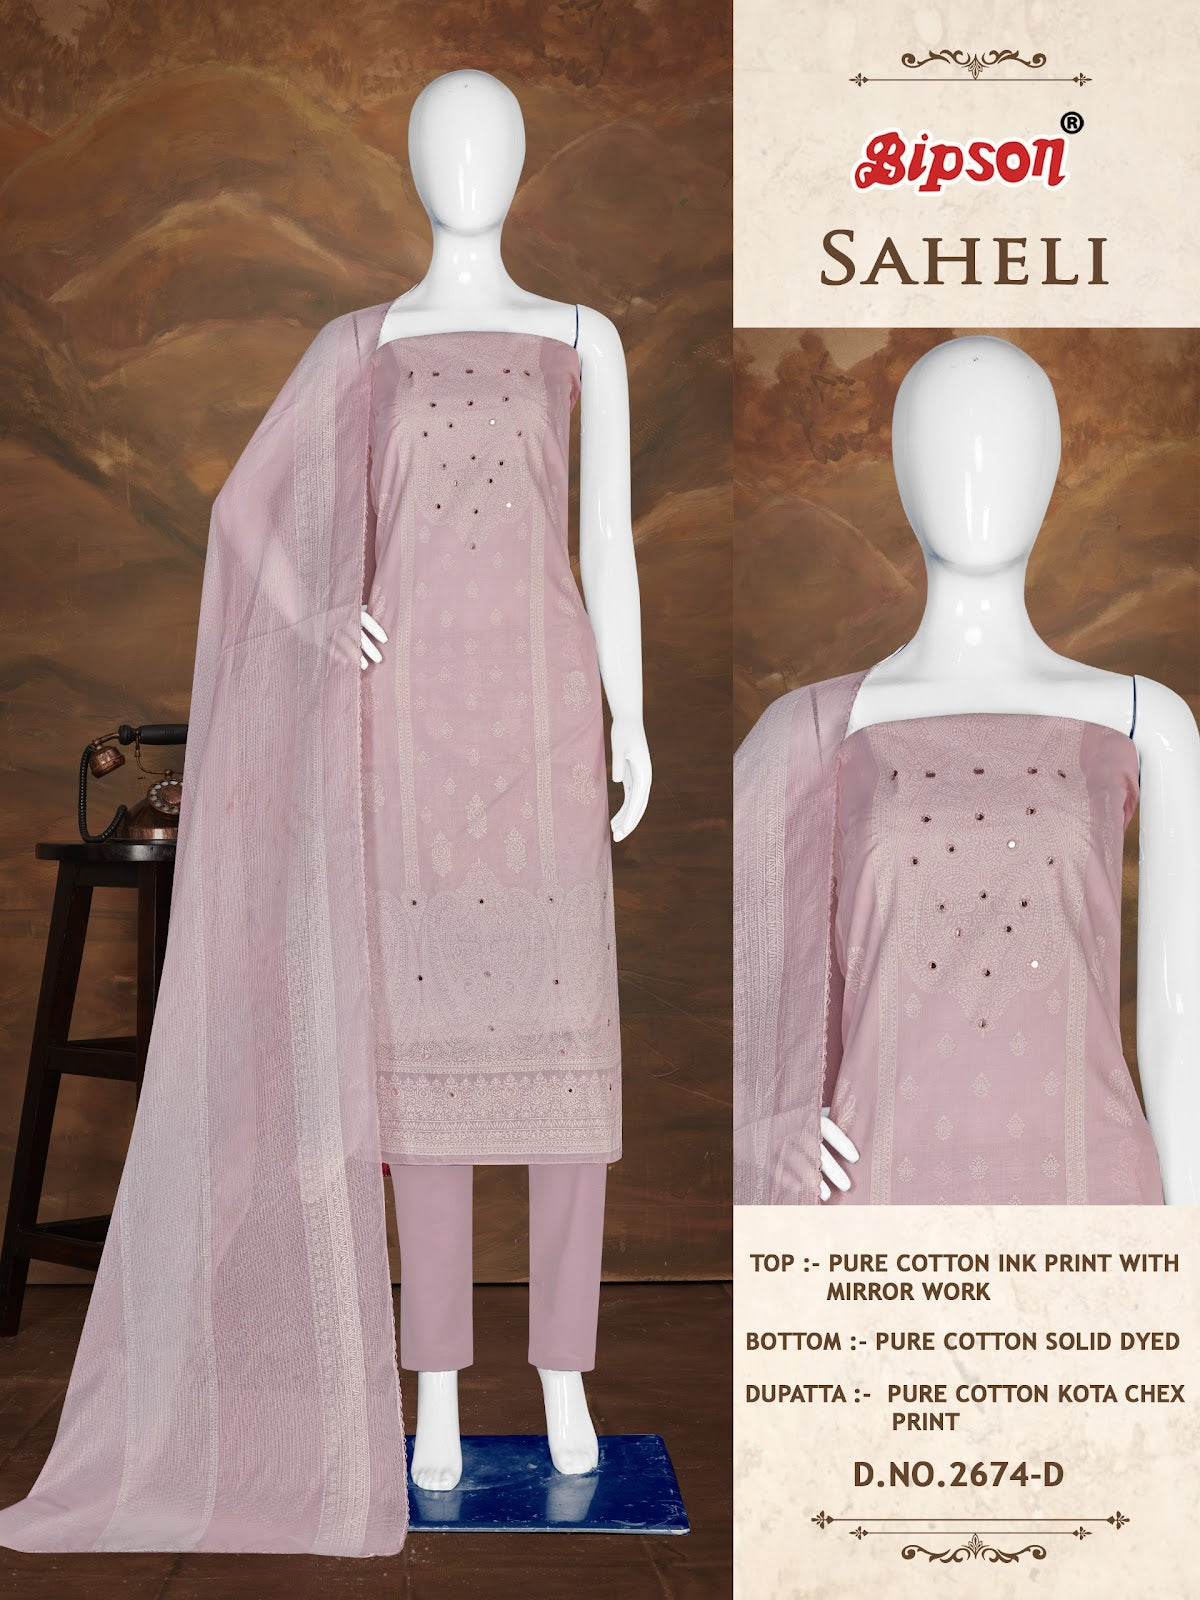 Saheli 2674 Bipson Prints Cotton Pant Style Suits Manufacturer India